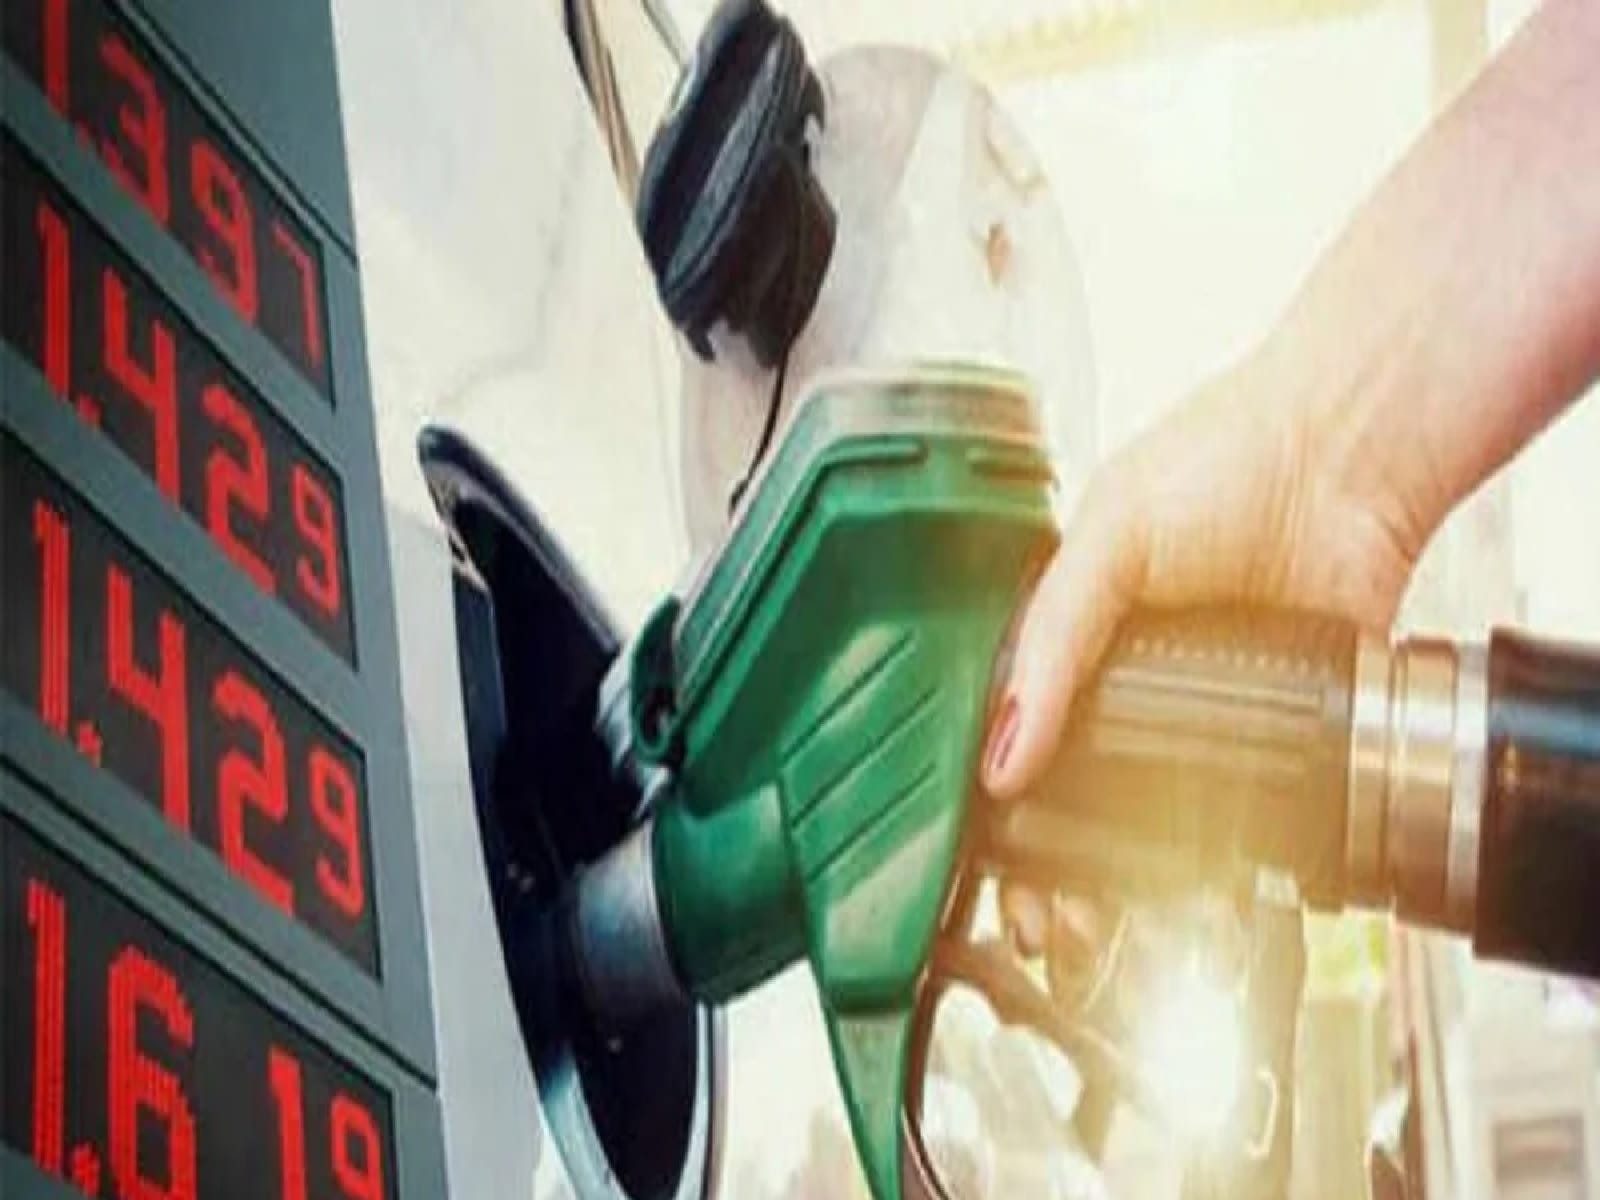 Petrol-Diesel Prices Today: ਇਸ ਸ਼ਹਿਰ 'ਚ ਡੀਜ਼ਲ 77.13 ਰੁਪਏ, ਪੈਟਰੋਲ 82.96 ਰੁਪਏ, ਜਾਣੋ ਆਪਣੇ ਸ਼ਹਿਰ ਦਾ ਰੇਟ